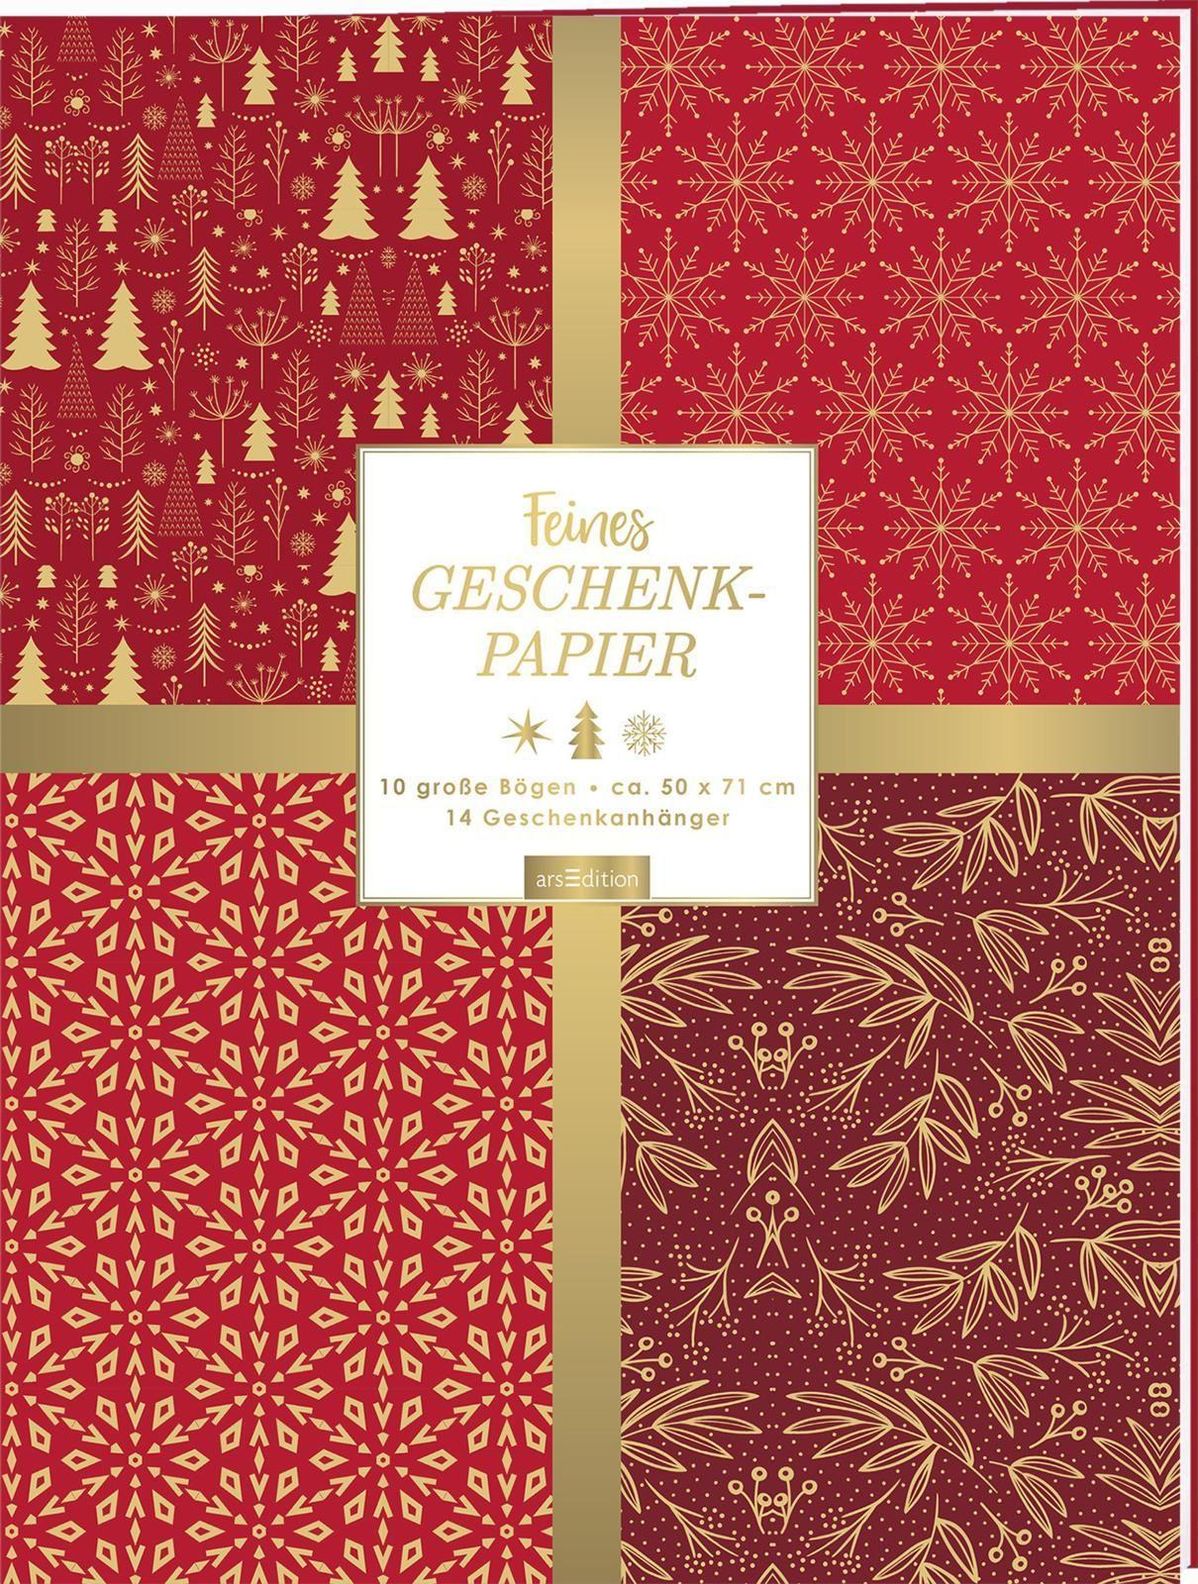 Feines Geschenkpapier mit Geschenkanhängern | Weltbild.de